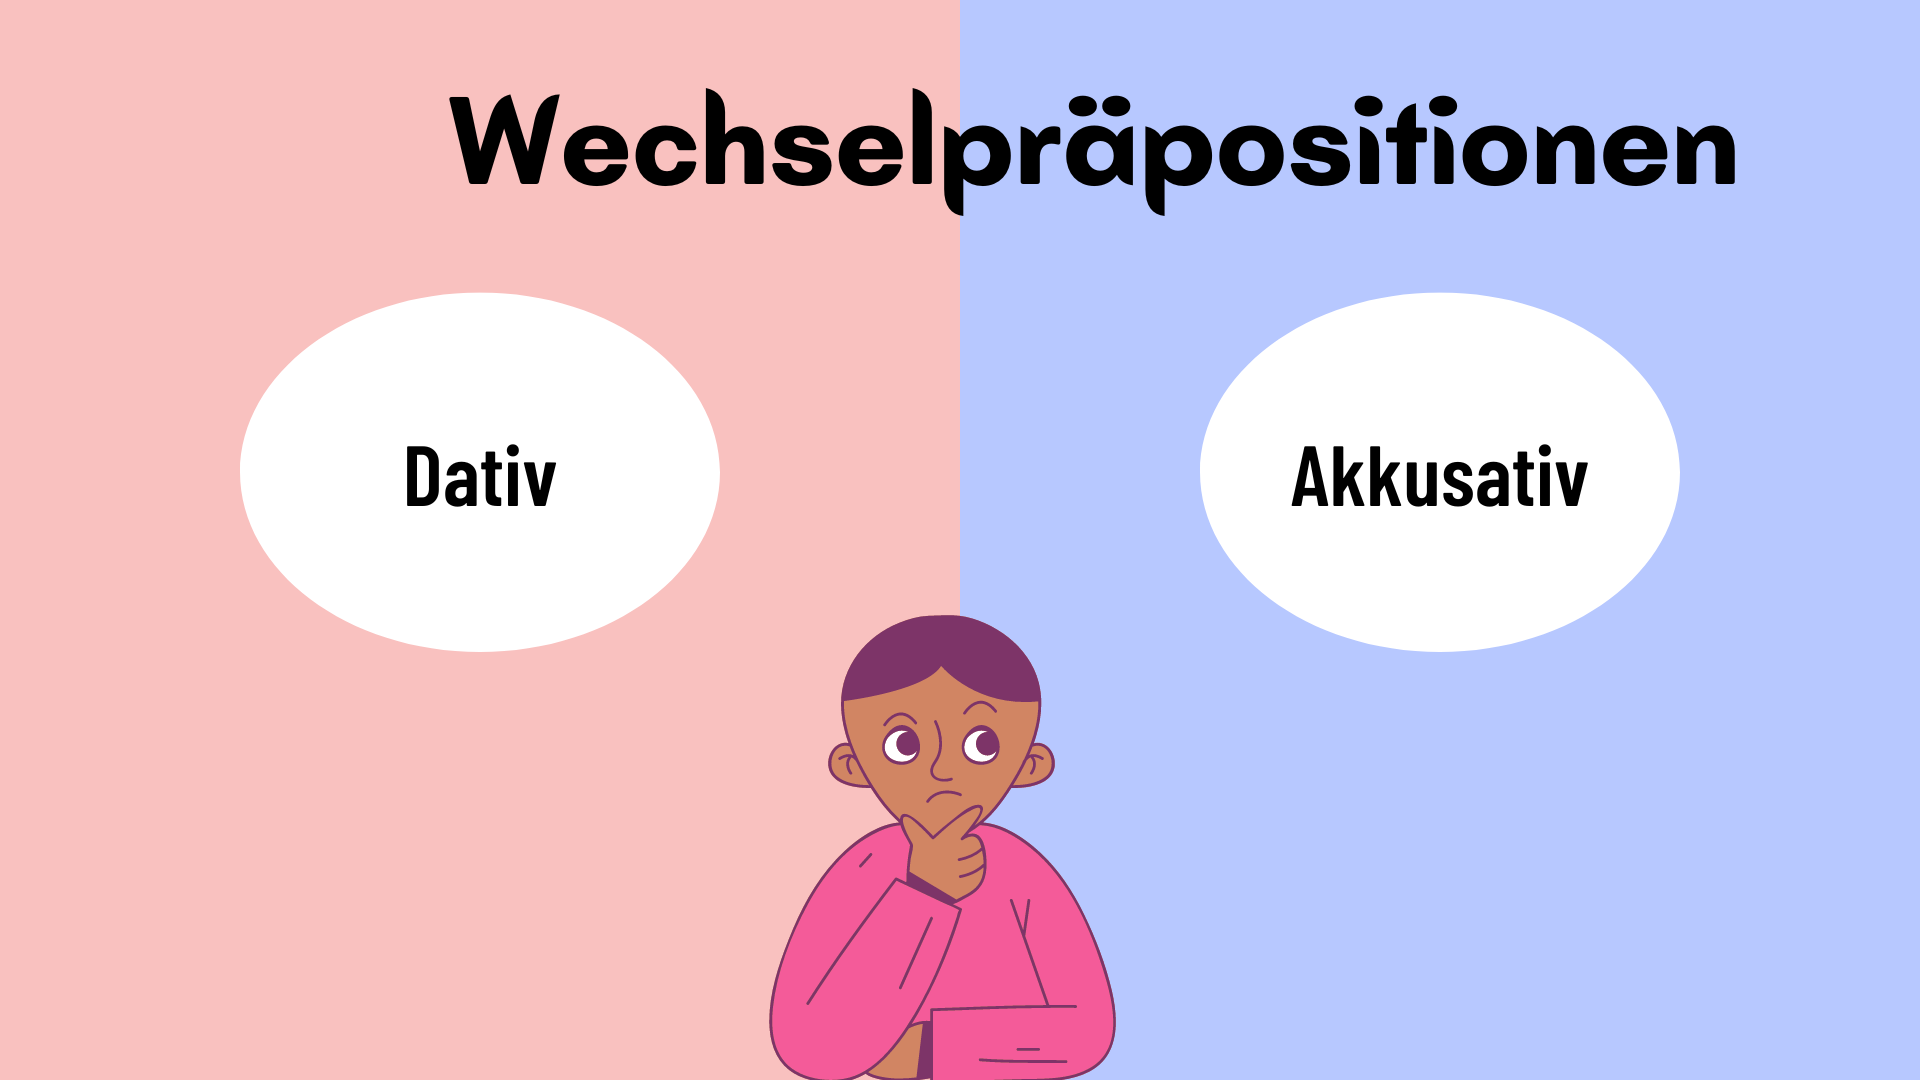 Wechselpräpositionen: Giới từ chỉ vị trí đi với Akkusativ và Dativ trong tiếng Đức